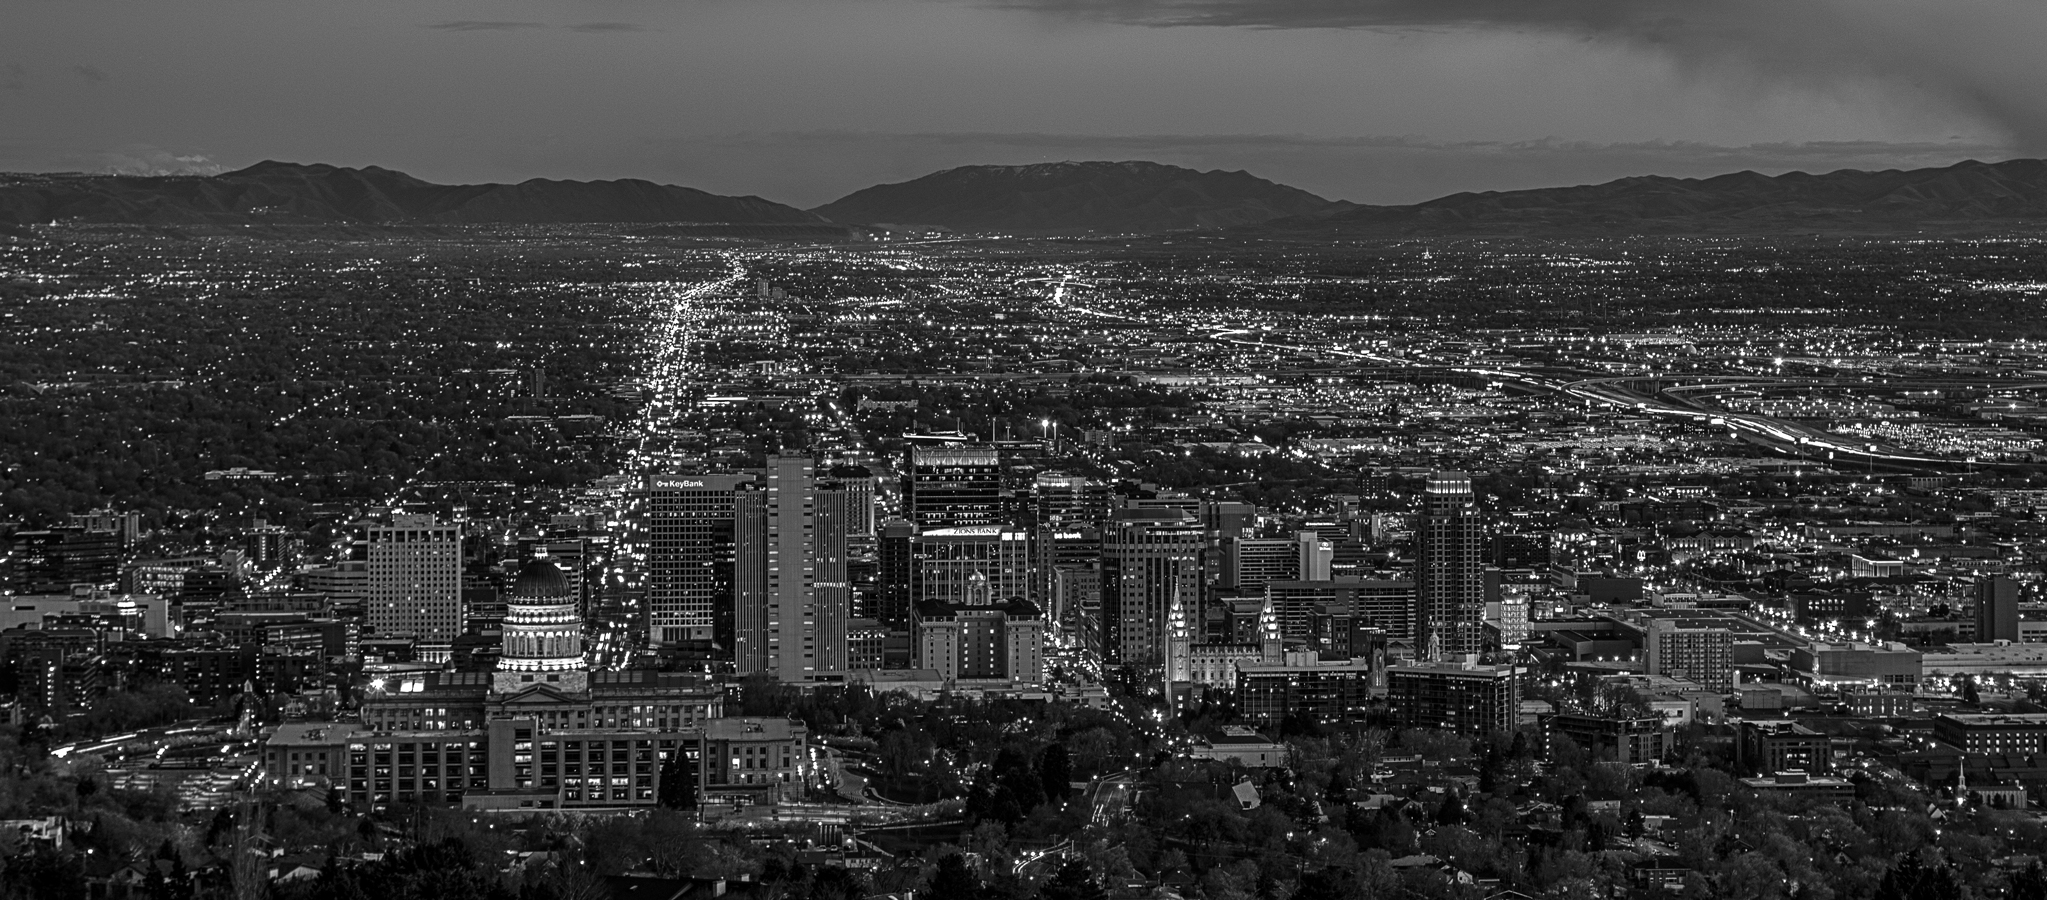 Salt Lake City at Night